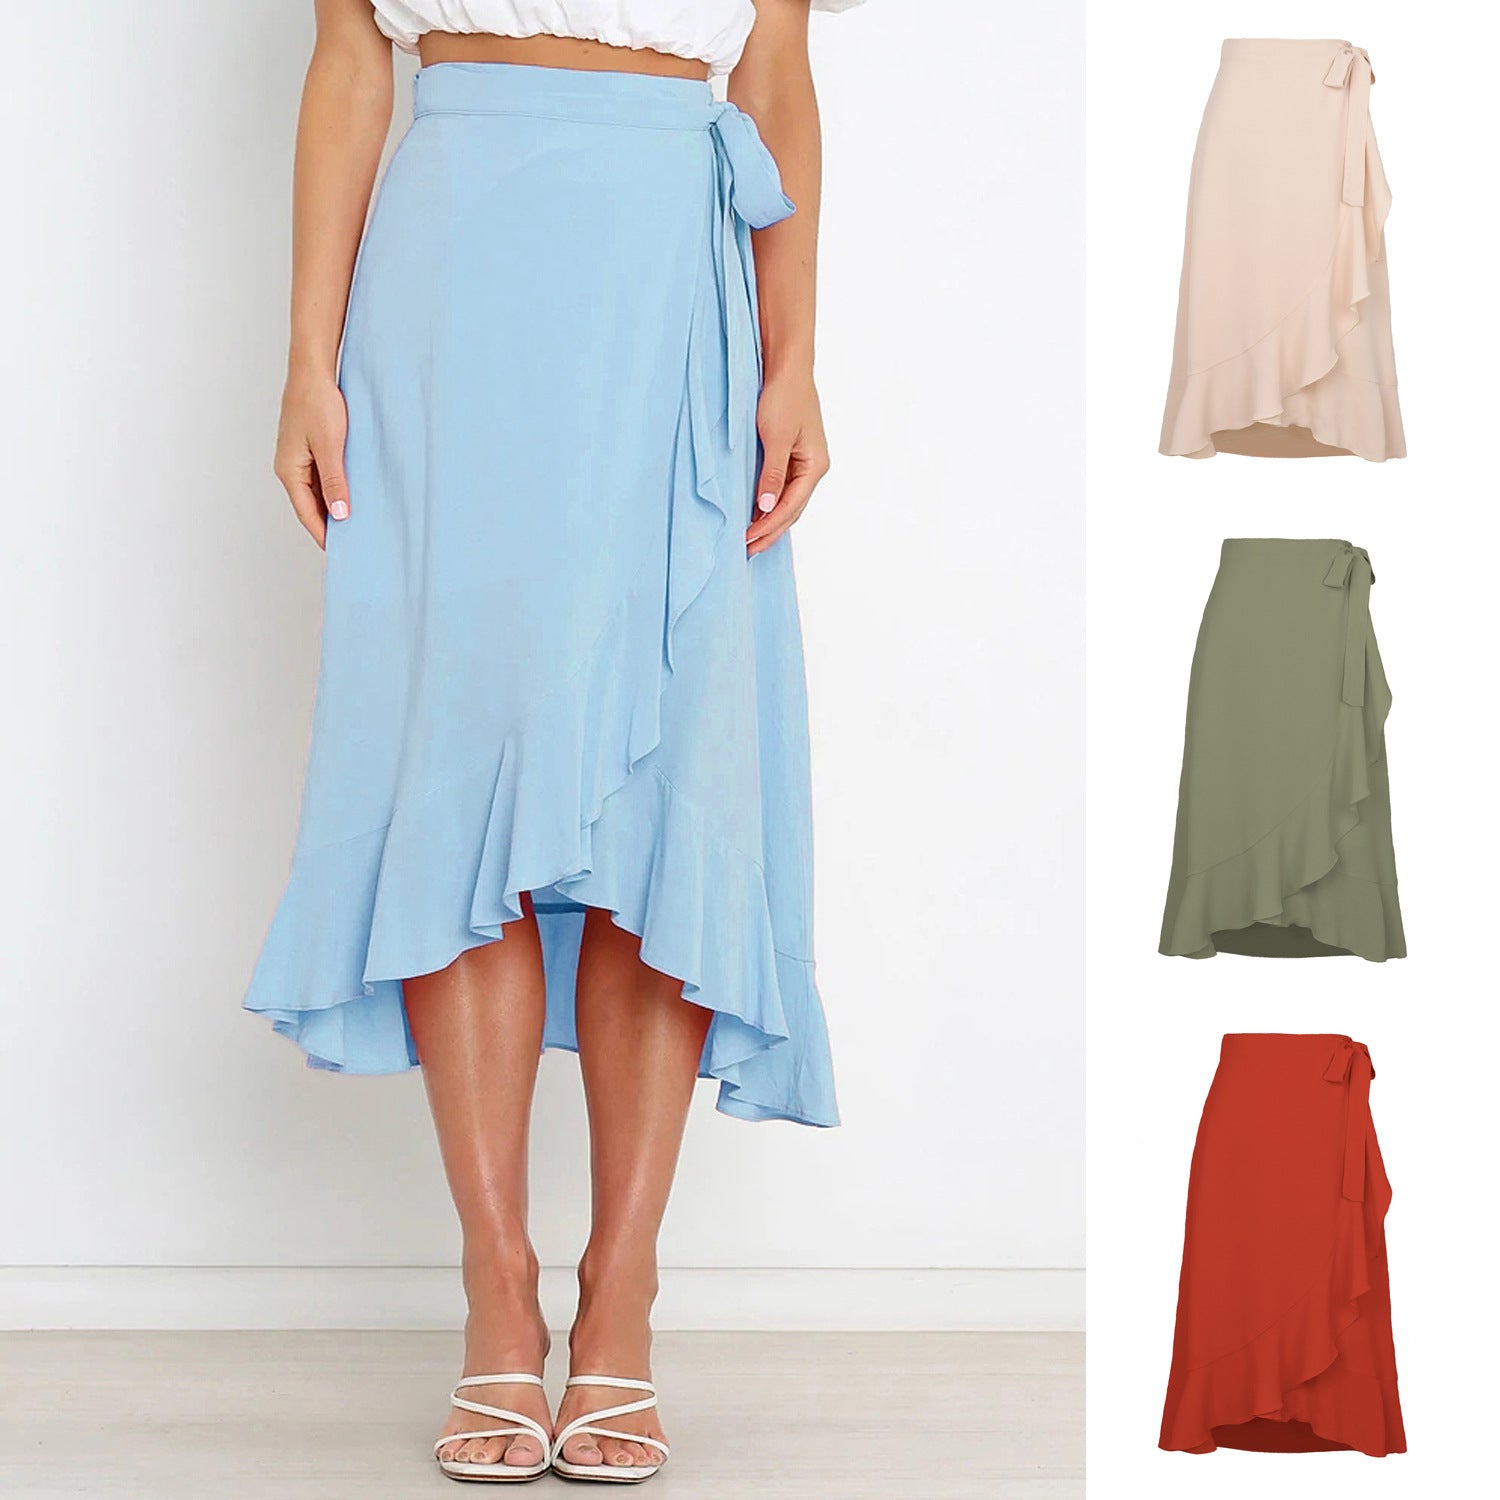 Fresh And Sweet Summer Self-tie Irregular Solid Skirt Women's Dress